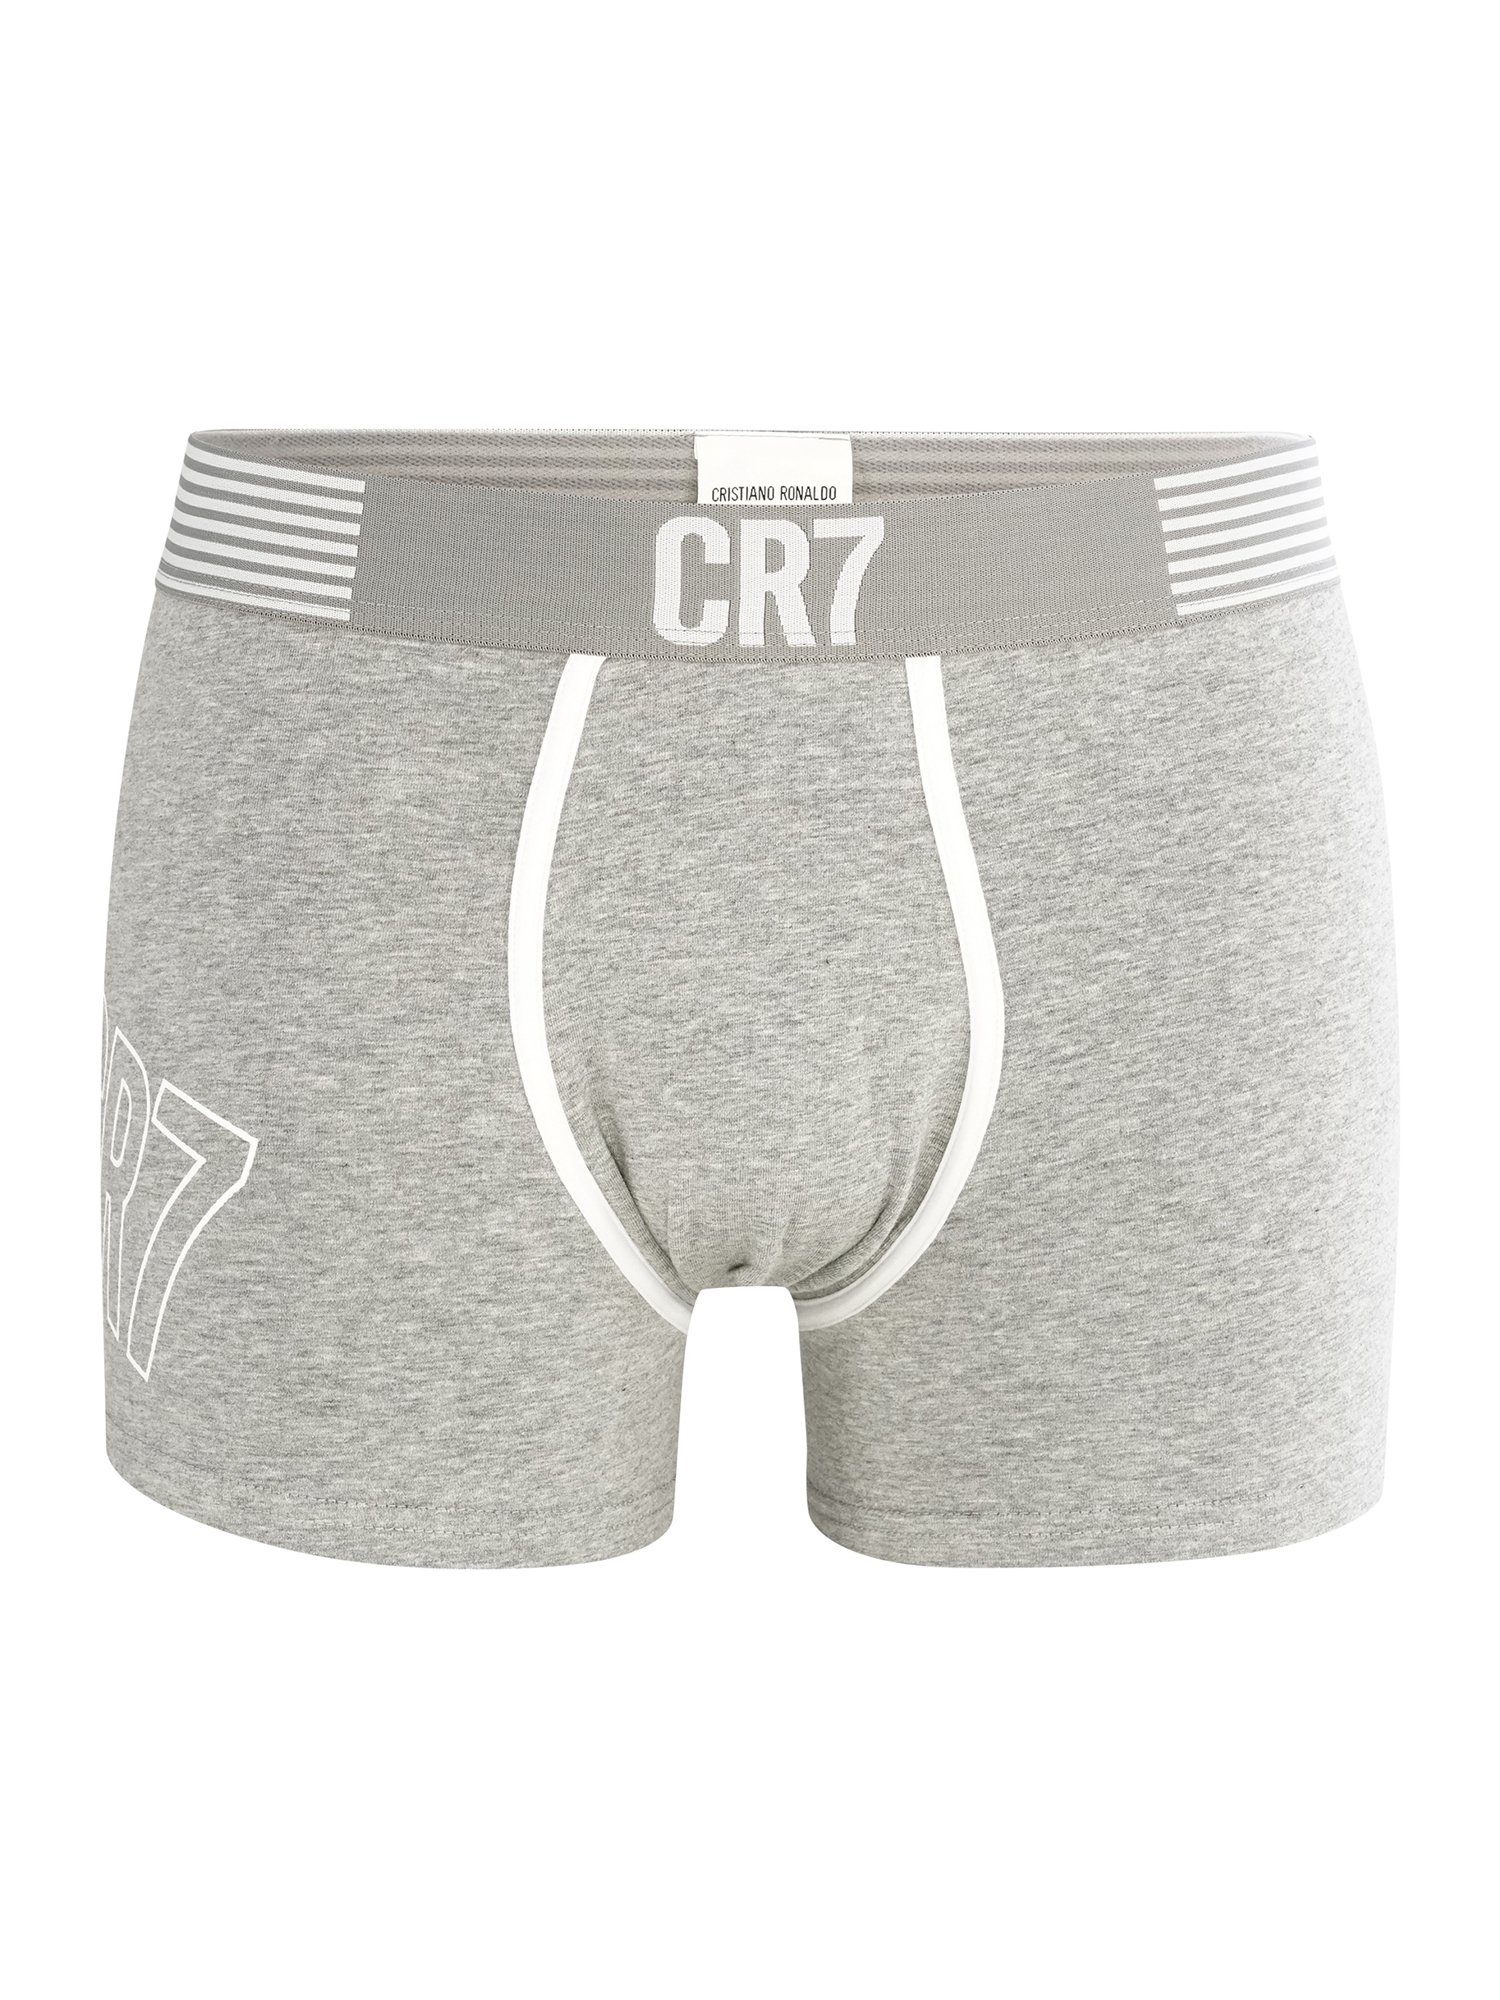 2-Pack CR7 hellblau/grau Retro Pants FASHION